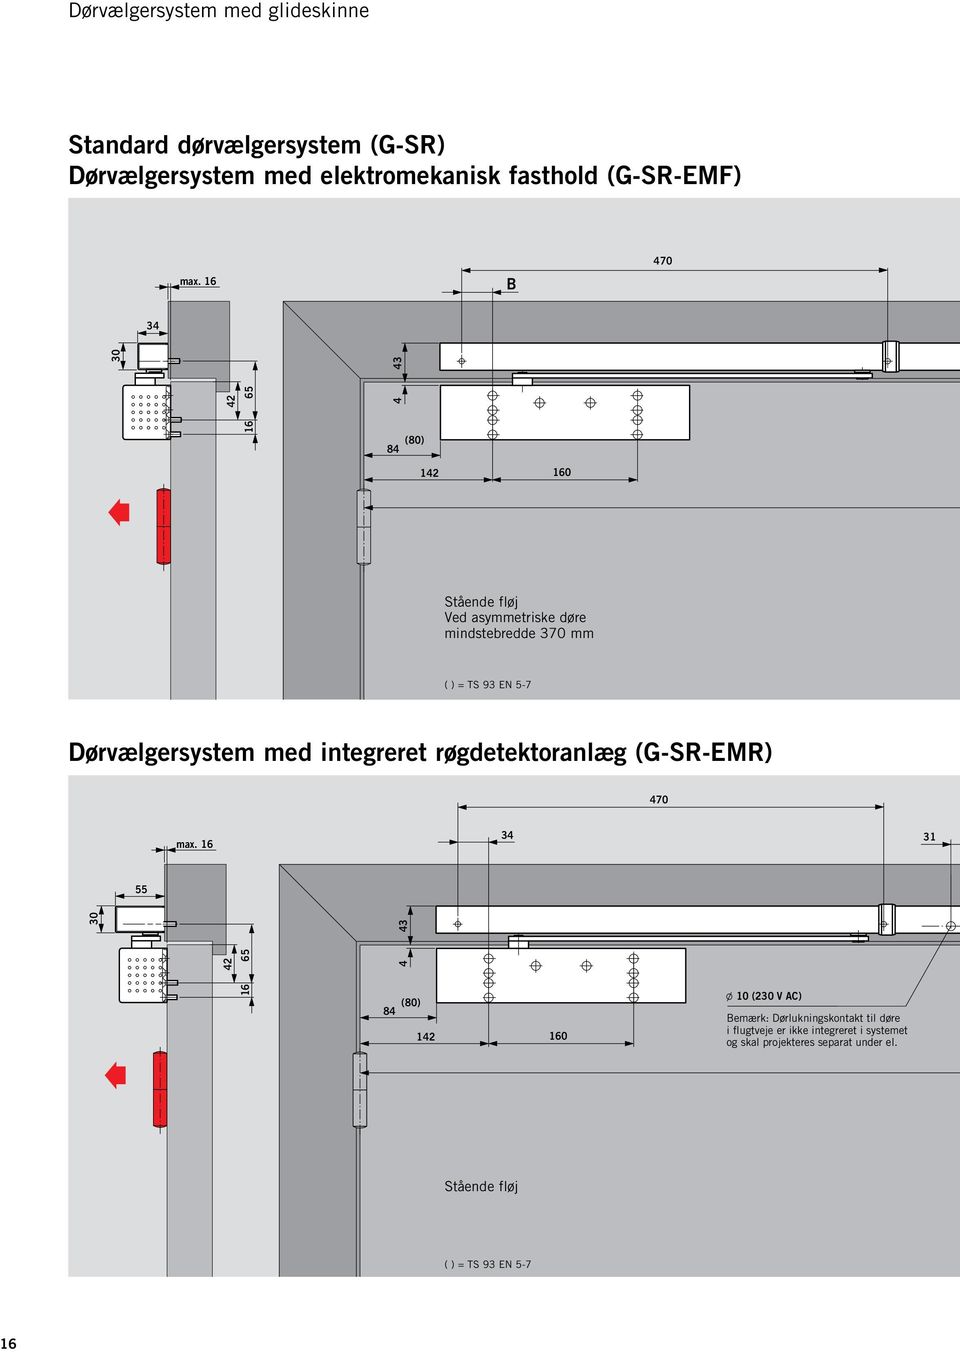 Dørvælgersystem med integreret røgdetektoranlæg (G-SR-EMR) 470 max.